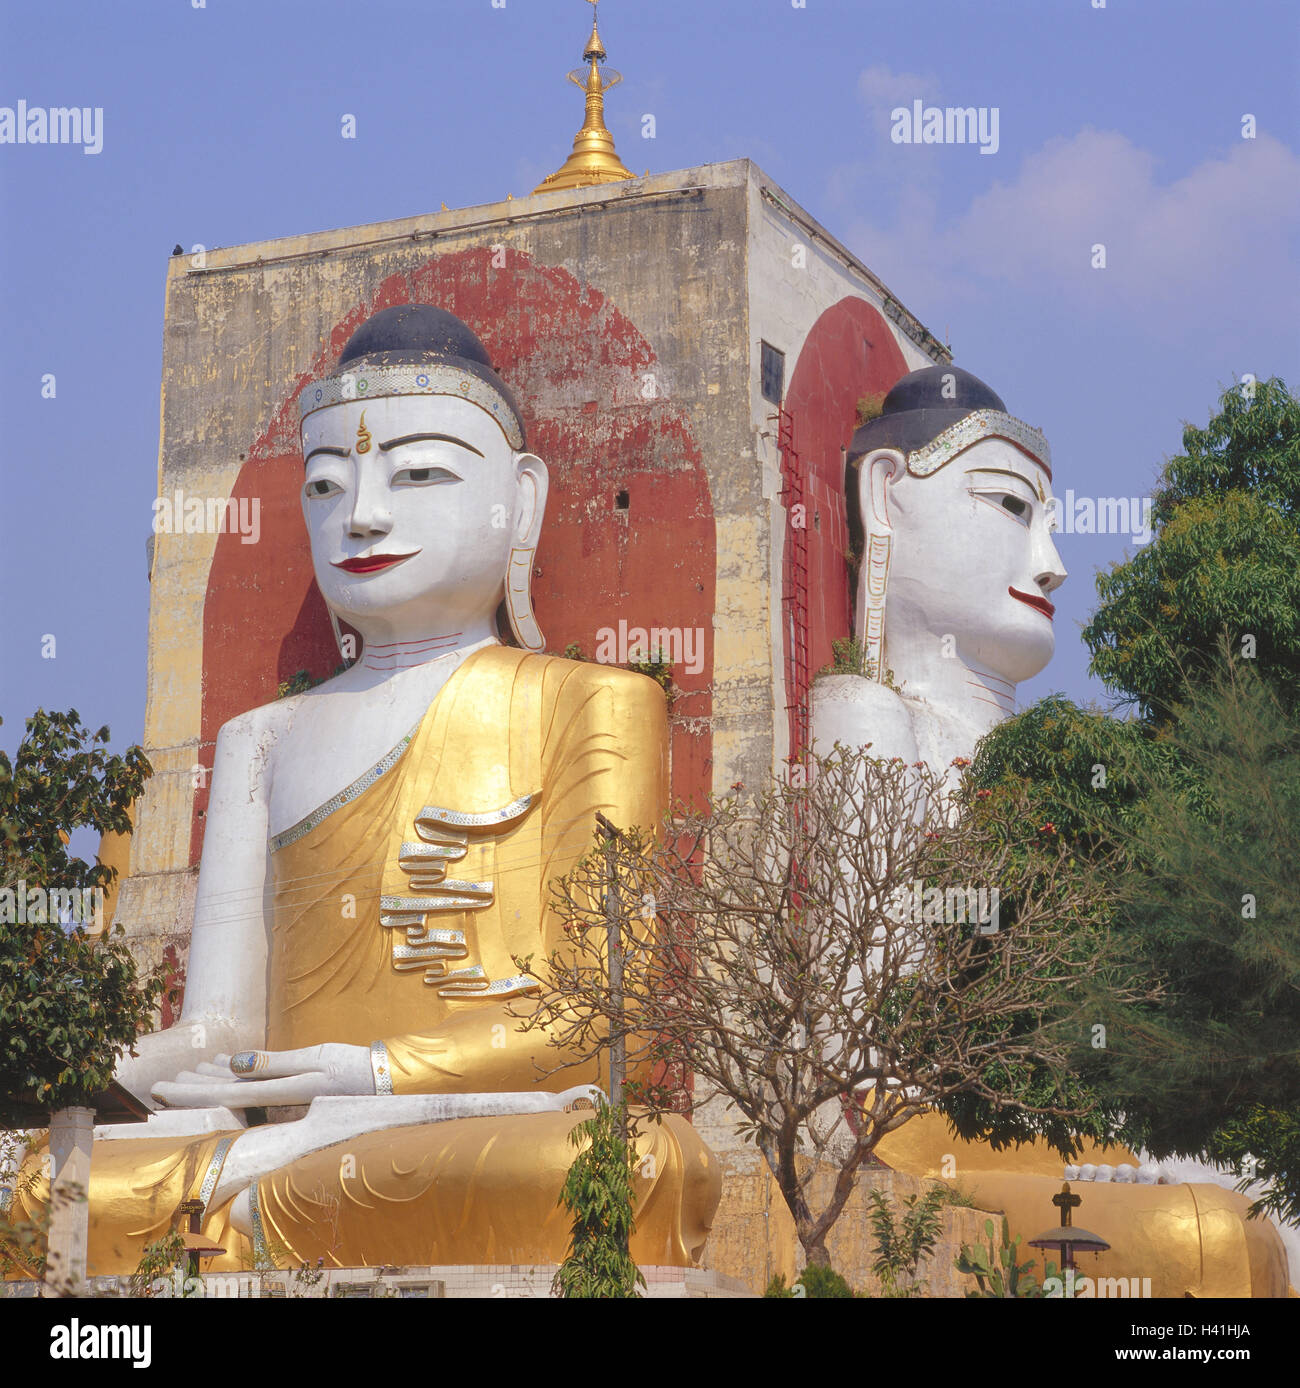 La Birmanie, Bago, pagode Kyaikpun, détail, figures de Bouddha, Birmanie, Myanmar, pagode, quatre-look pagode, construit en 1476, la structure, l'architecture, de style architectural, Bouddhas, statues de Bouddha, de figures, de 30 m de haut, dos à dos, l'art, la culture, le lieu d'intérêts Banque D'Images